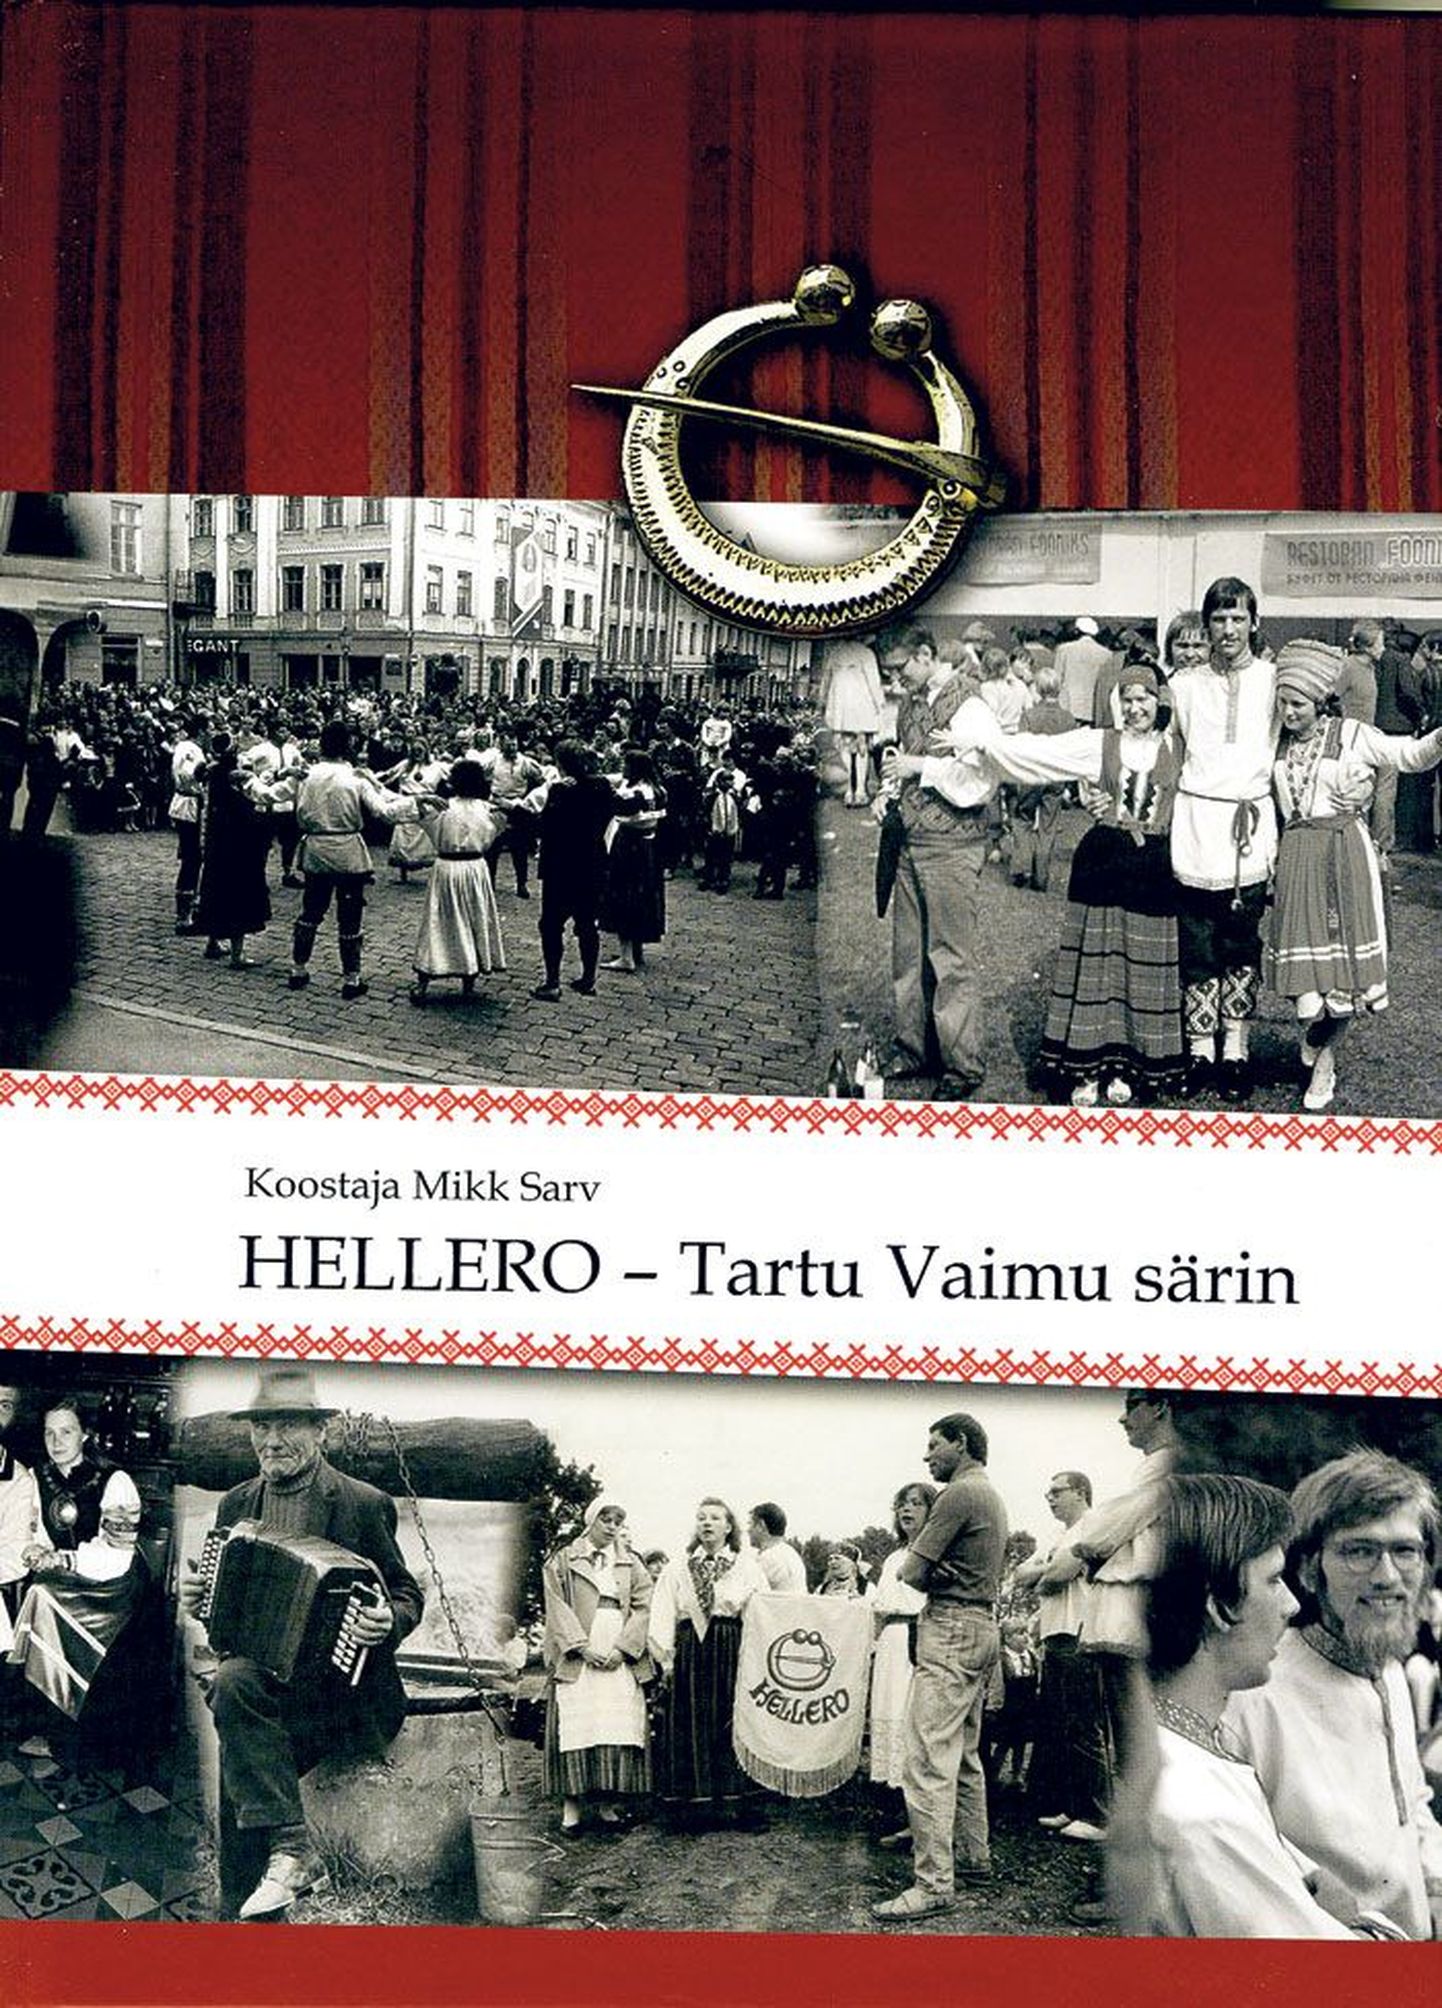 Raamat «Hellero – Tartu Vaimu särin»,
koostanud Mikk Sarv, kirjastanud Cum Laude, Tartu 2014, 172 lk.